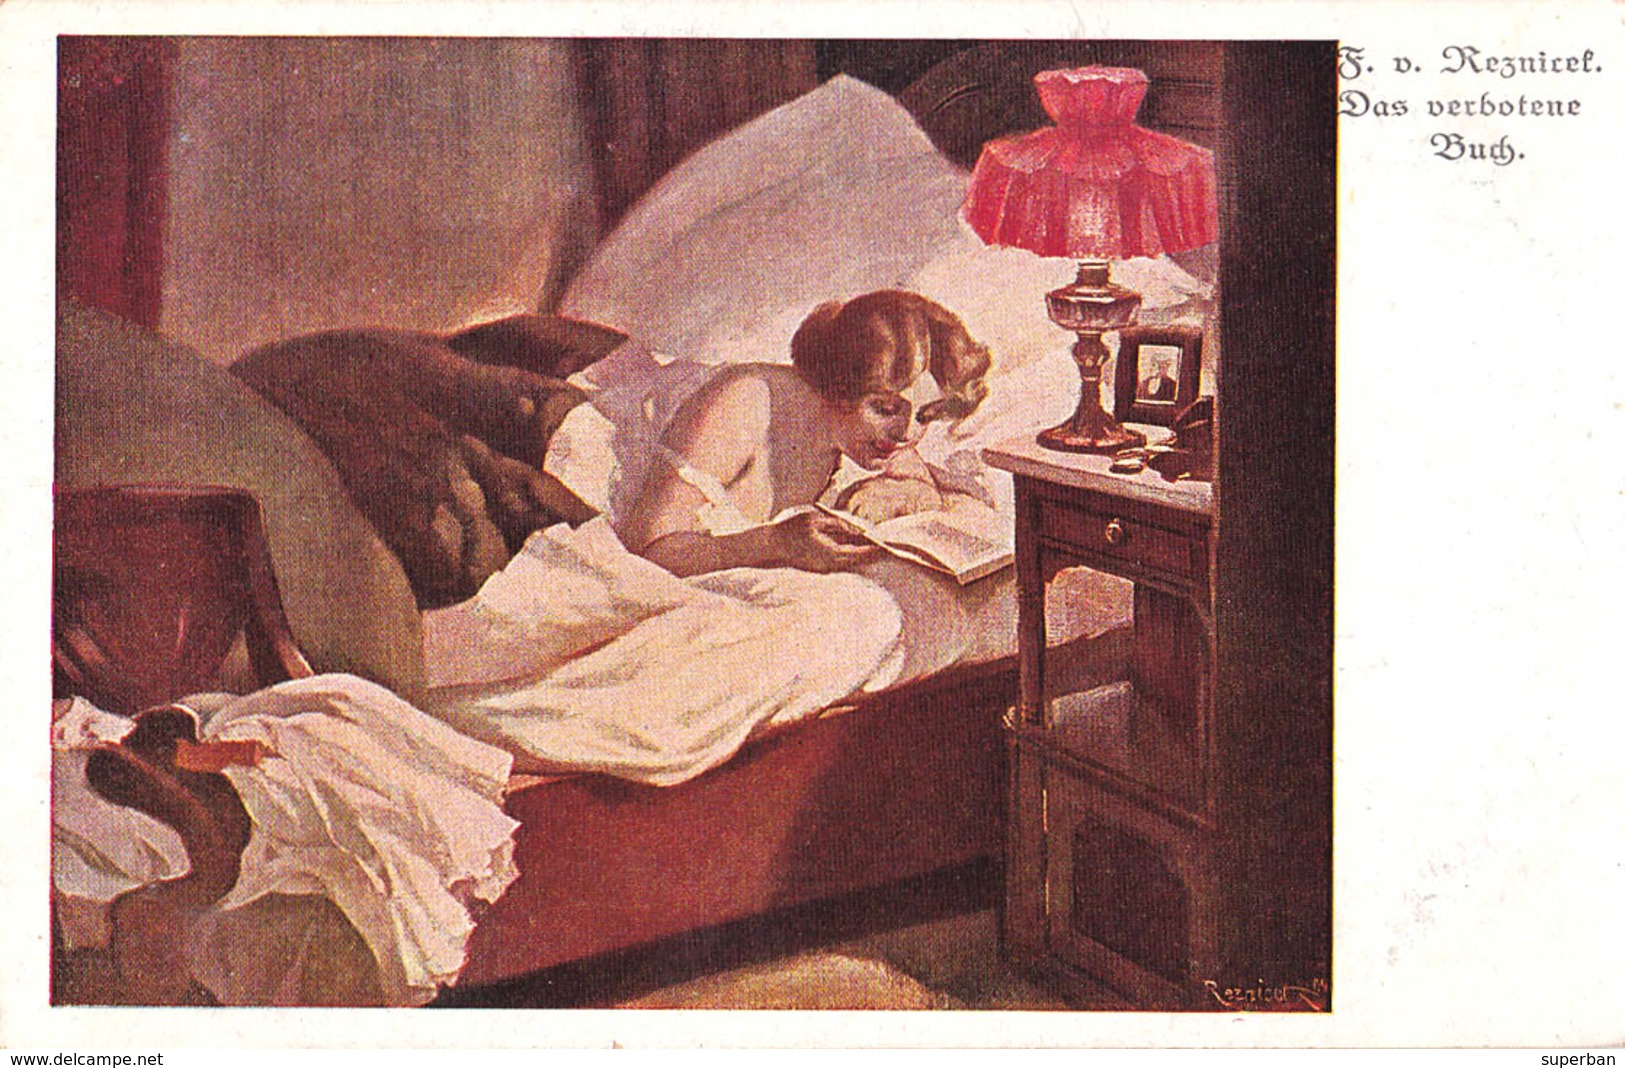 ART DÉCO / JUGENDSTIL - ÉROTISME / SEXY : FEMME Au LIT / EROTIC : HALF NAKED WOMAN In BED By F. V. REZNICEK (ab679) - Reznicek, Ferdinand Von